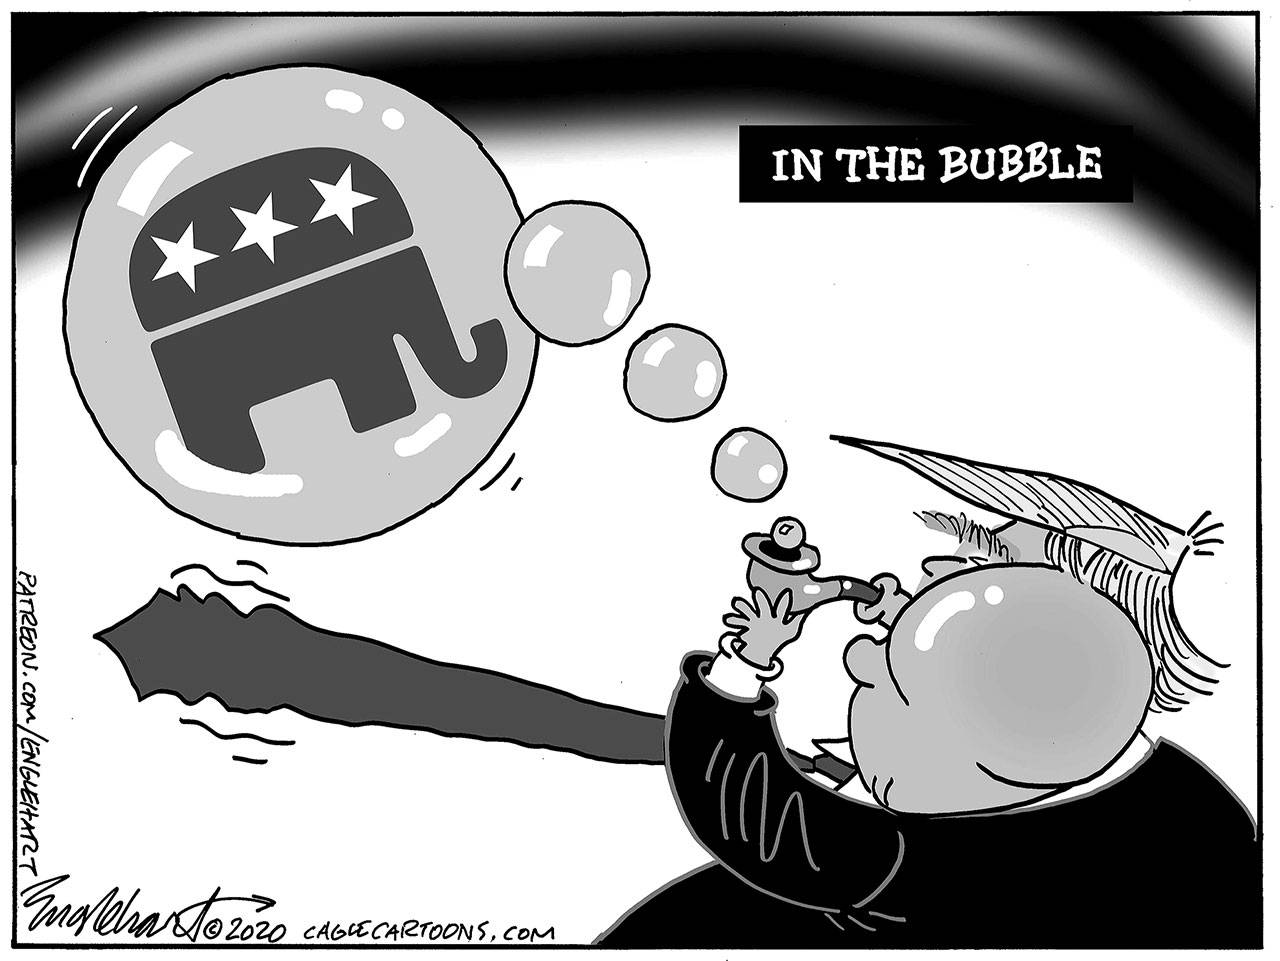 Bob Englehart, PoliticalCartoons.com